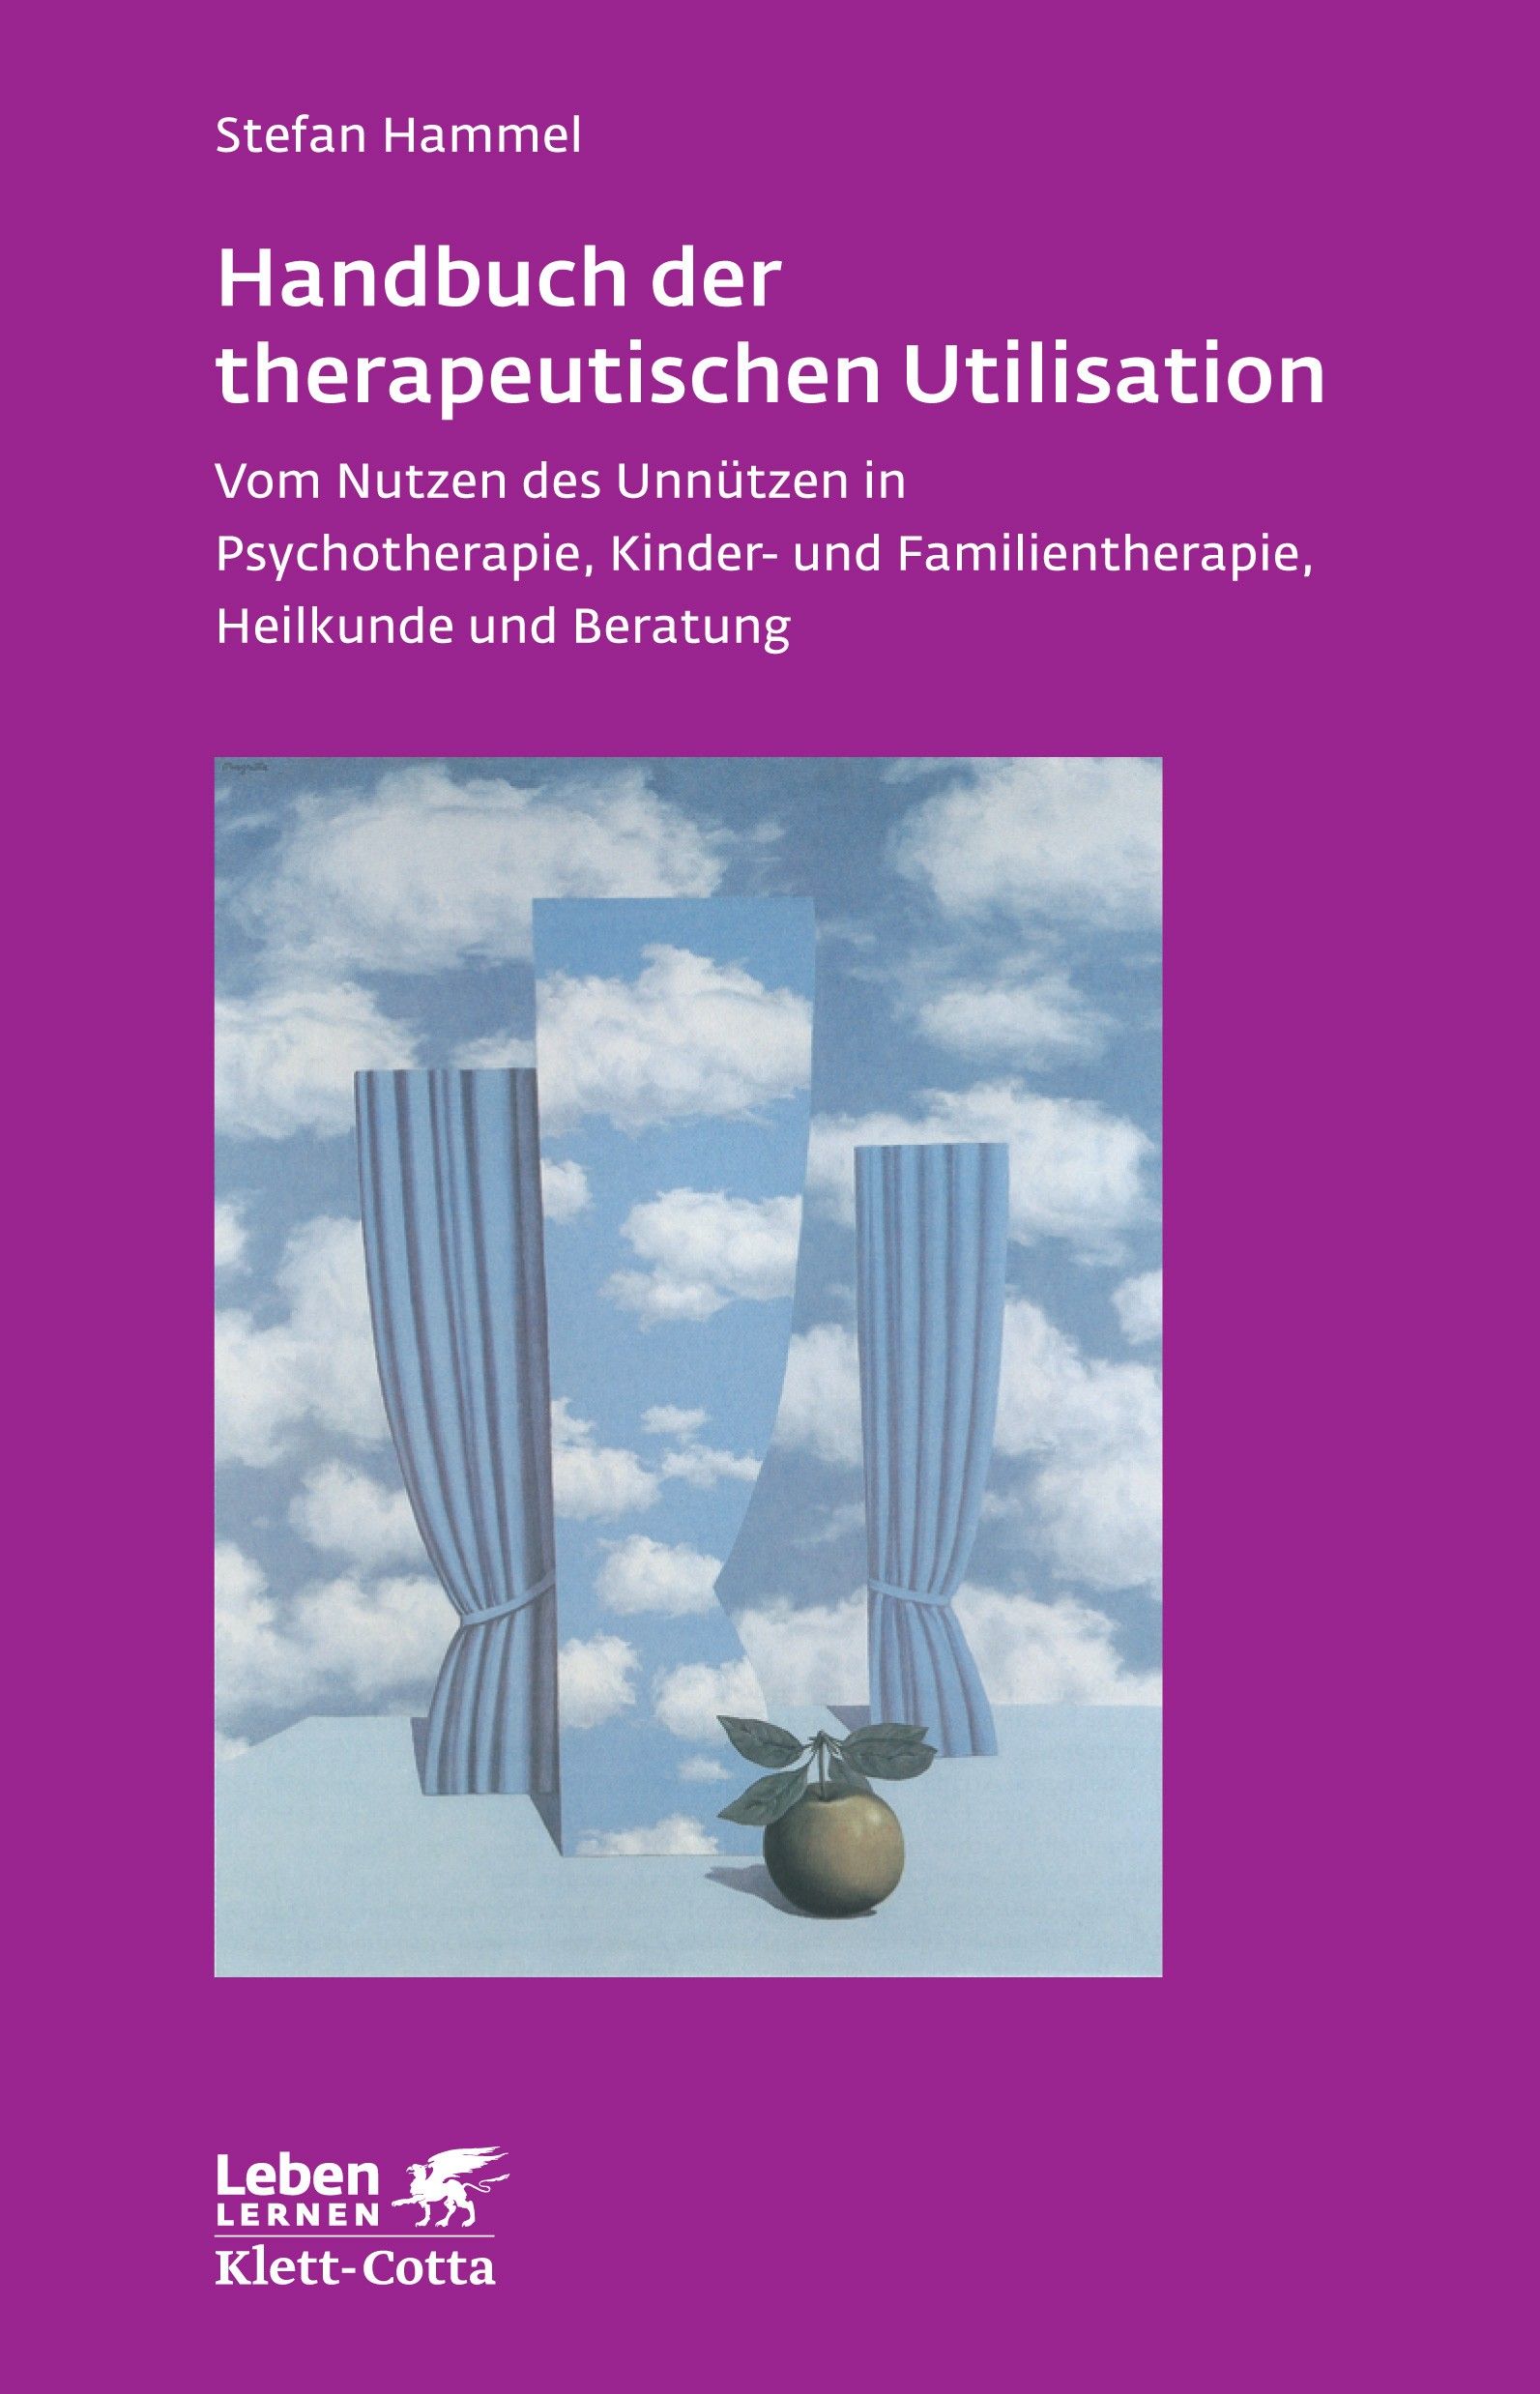 handbuch-der-therapeutischen-utilisation-1-st-shop-apotheke